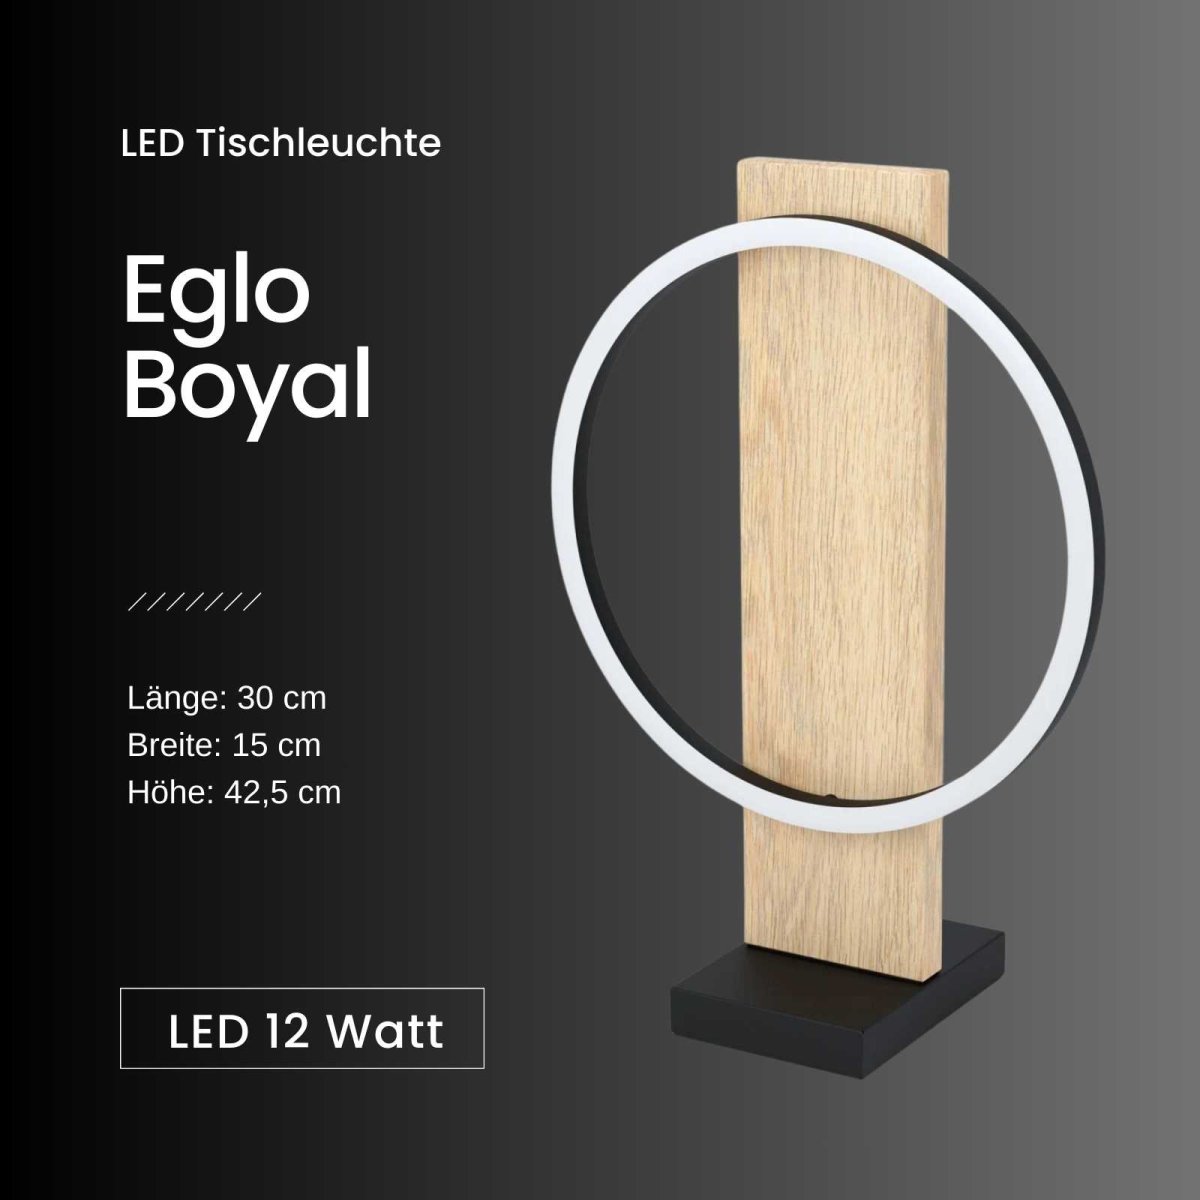 Tischleuchte Eglo Boyal LED Tischlampe Holz natur Schwarz Weiß, 49,00 €